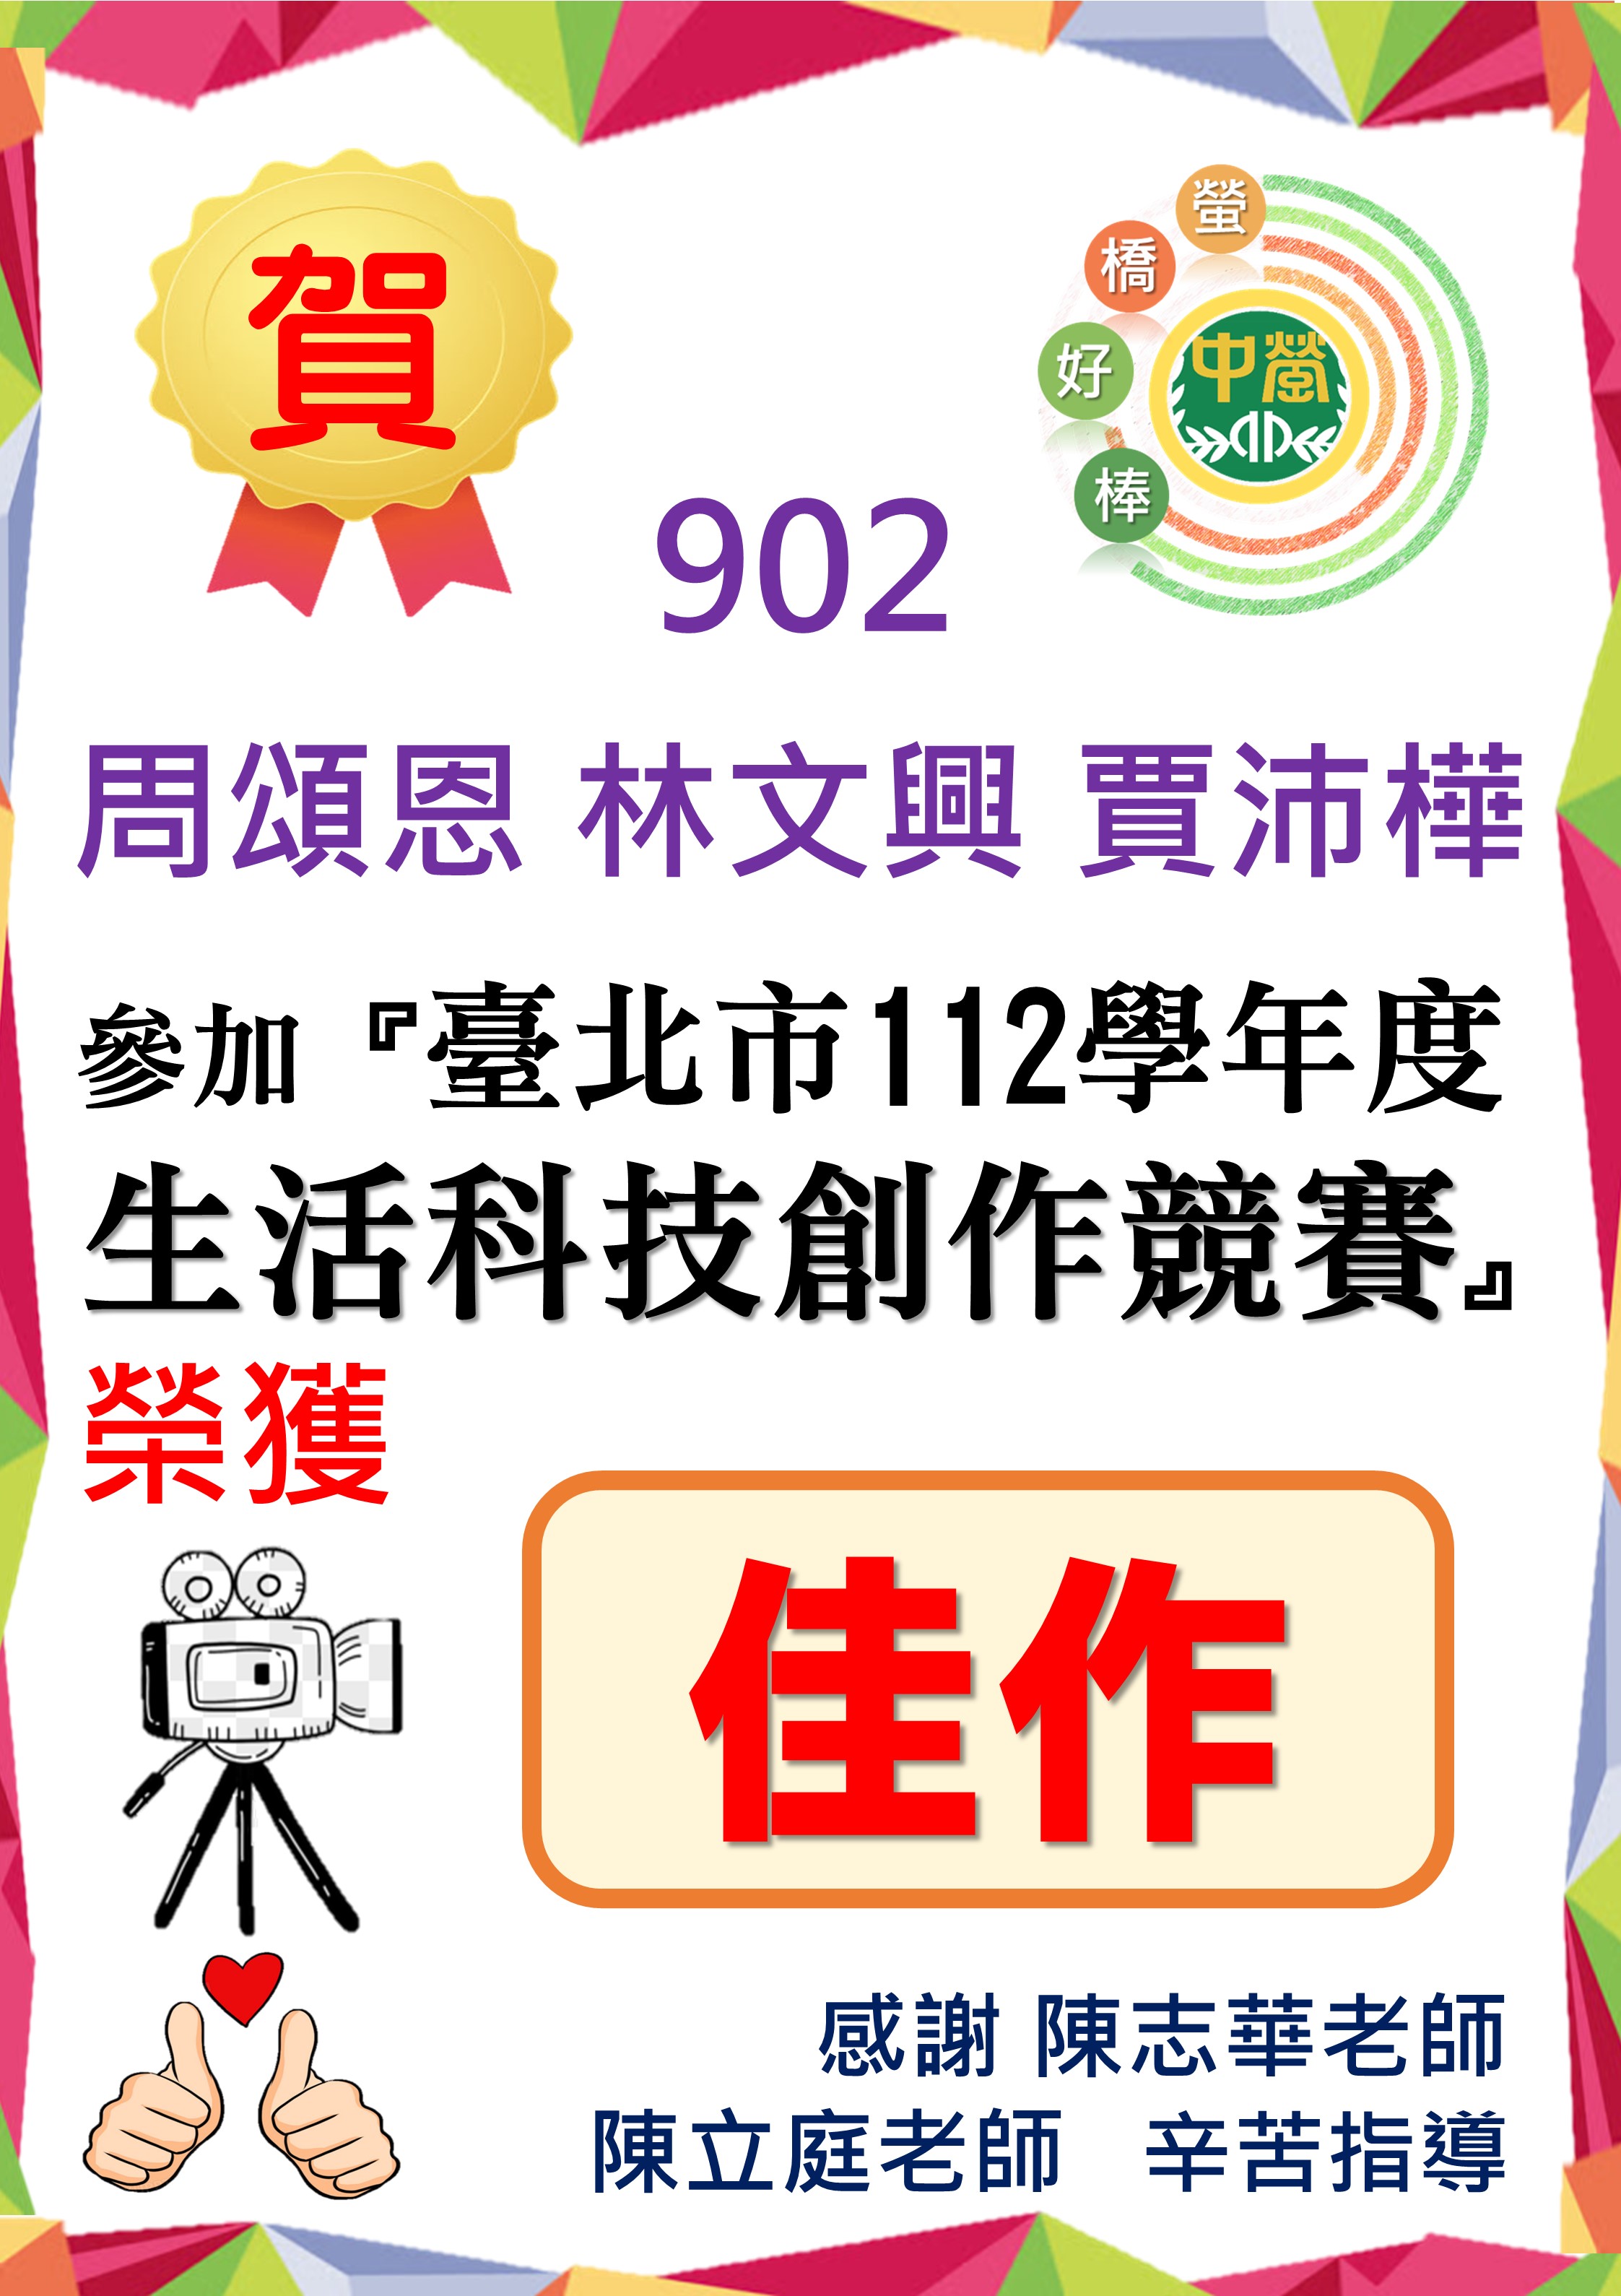 902周頌恩 林文興 賈沛樺同學參加臺北市112學年度生活科技創作競賽 榮獲佳作